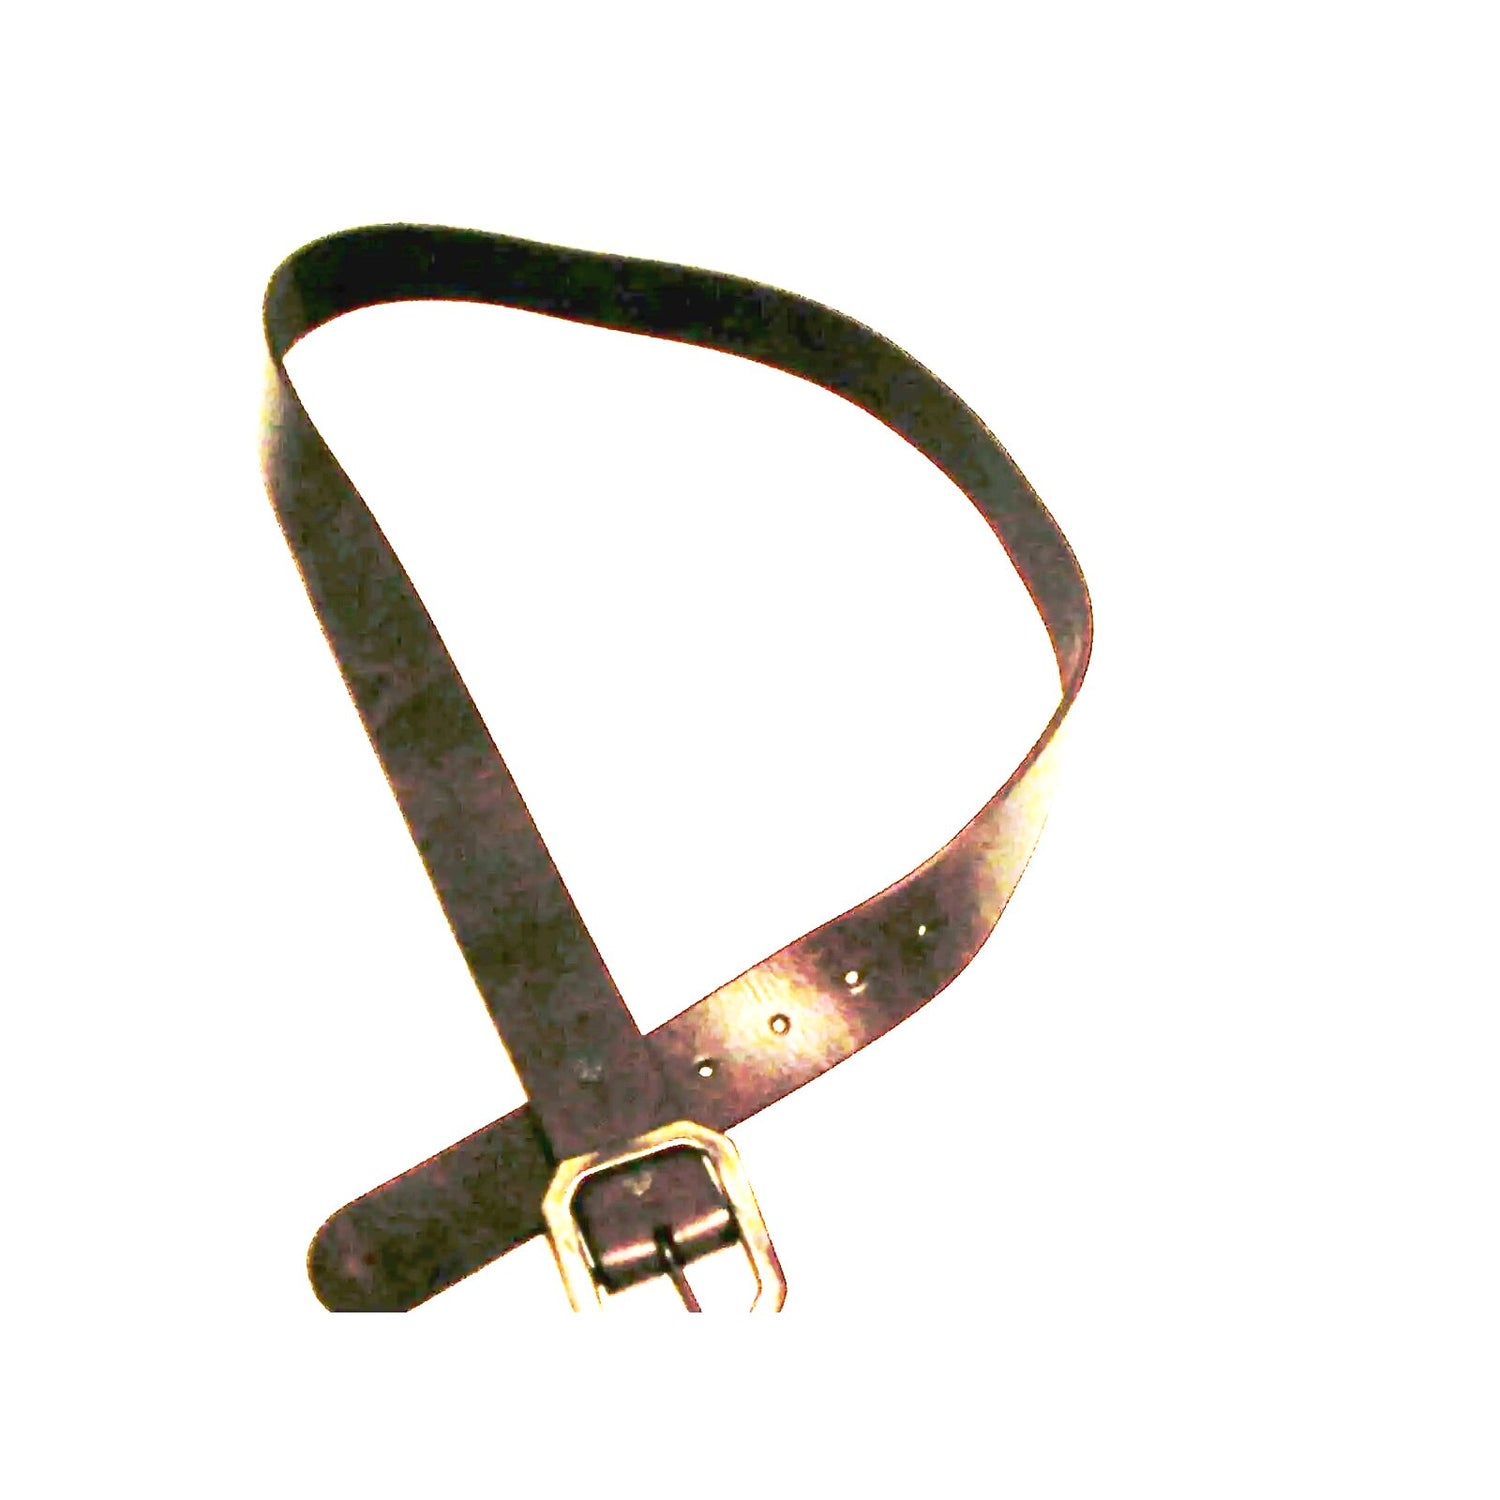 True religion mens leather belt gunmetal buckle size 30 inch dark  brown new